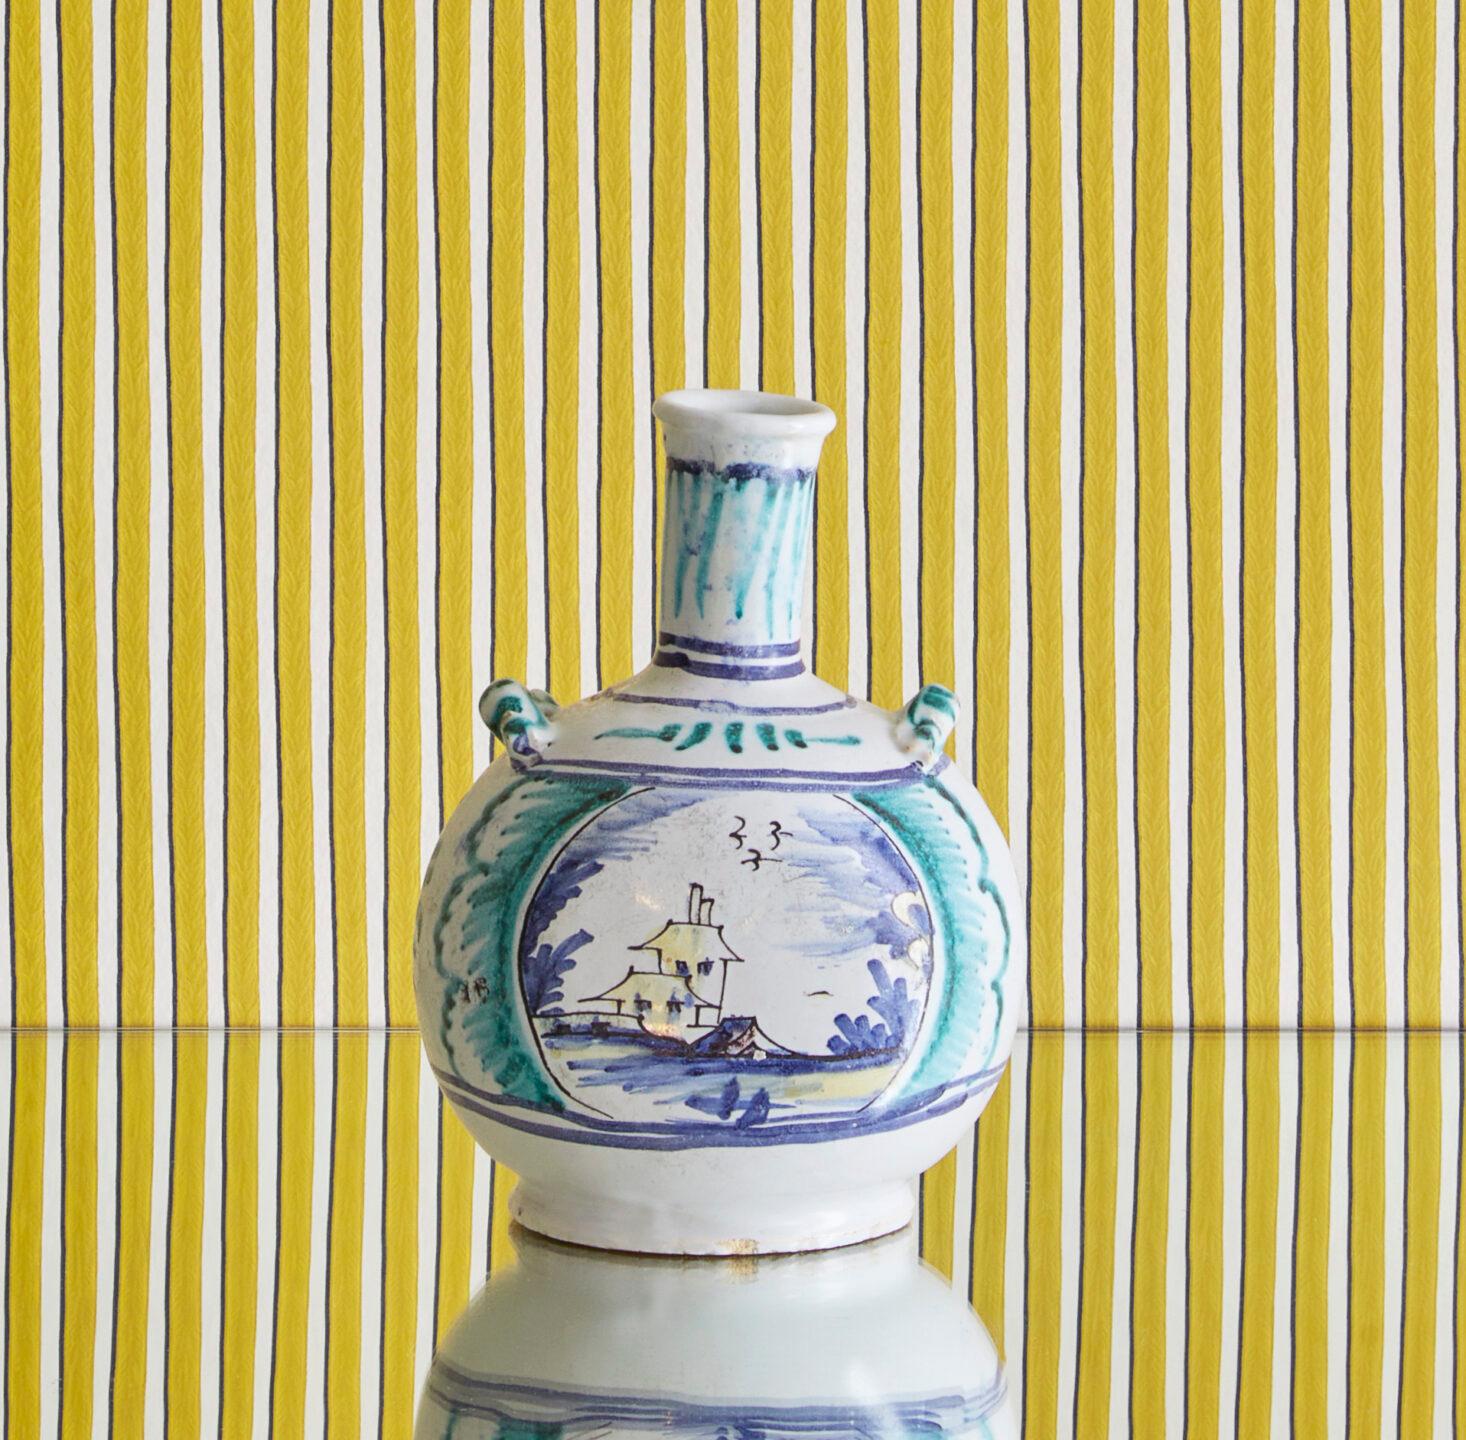 Frankreich, 18. Jahrhundert

Flaschenvase aus Keramik, blau und grün bemalt. 

Maße: H 13 x Ø 13 cm.